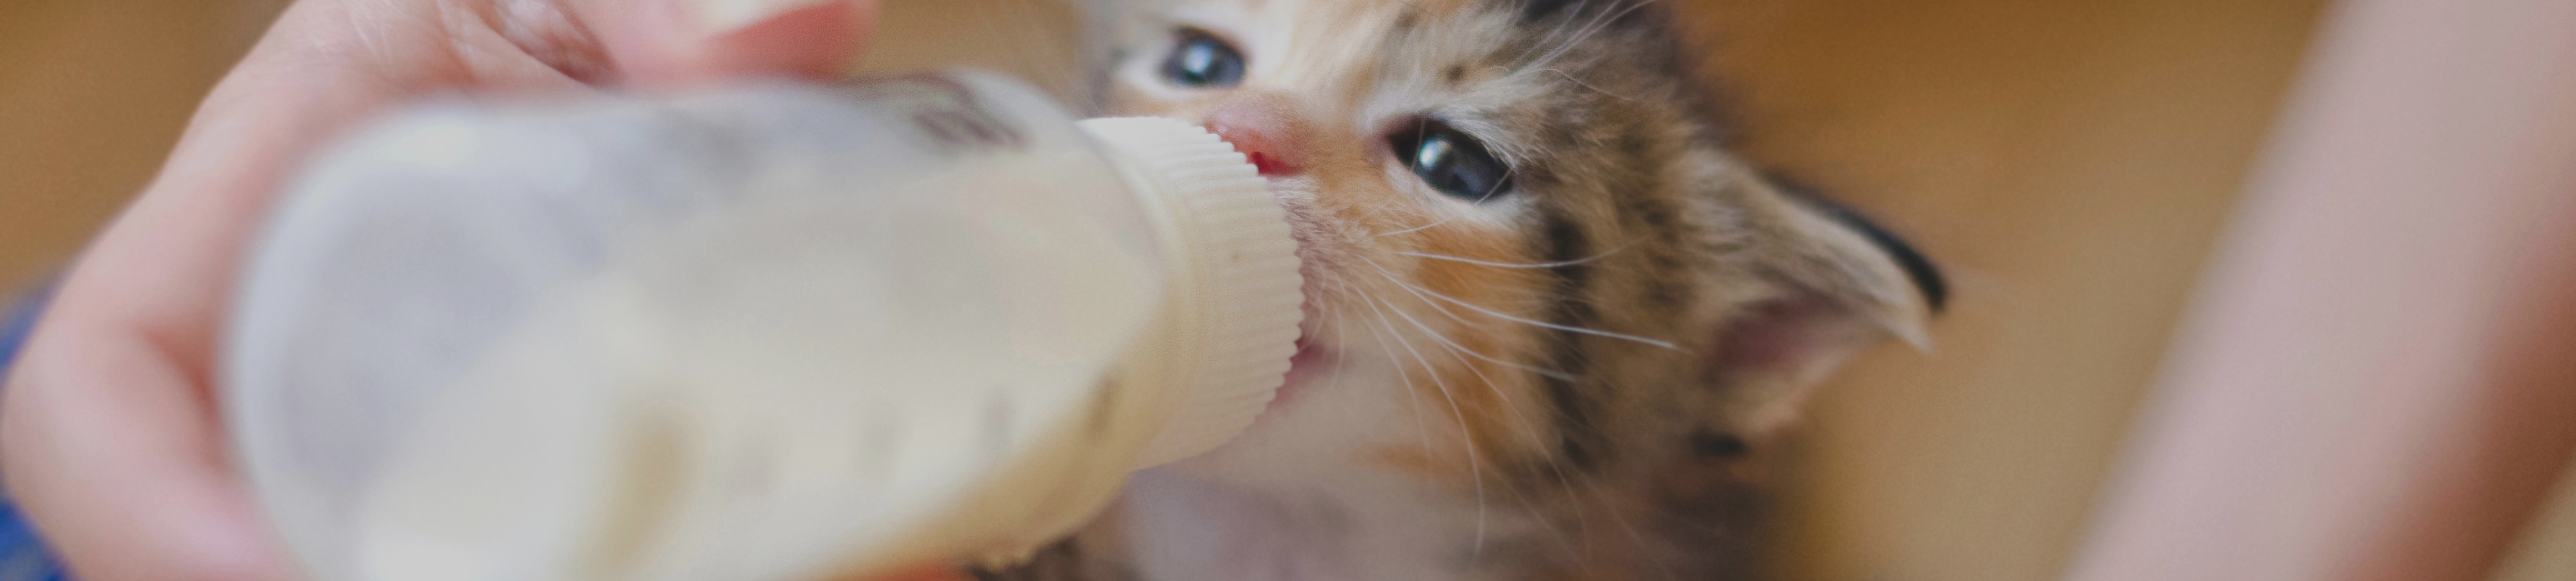 Kitten feeding with Di-Vetelact formula banner.